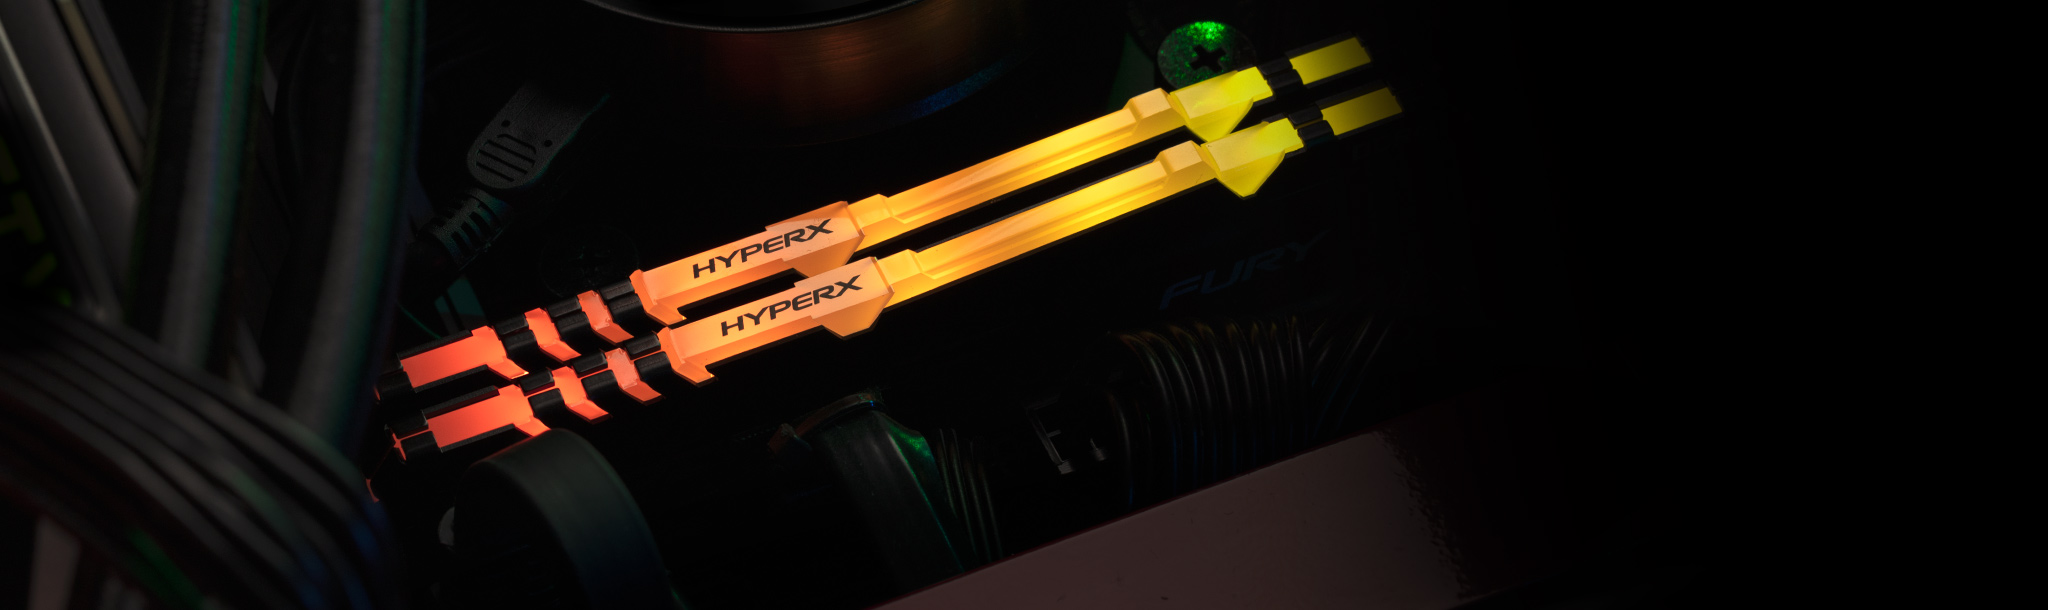 采用金士顿 HyperX RGB 内存的台式游戏 PC。